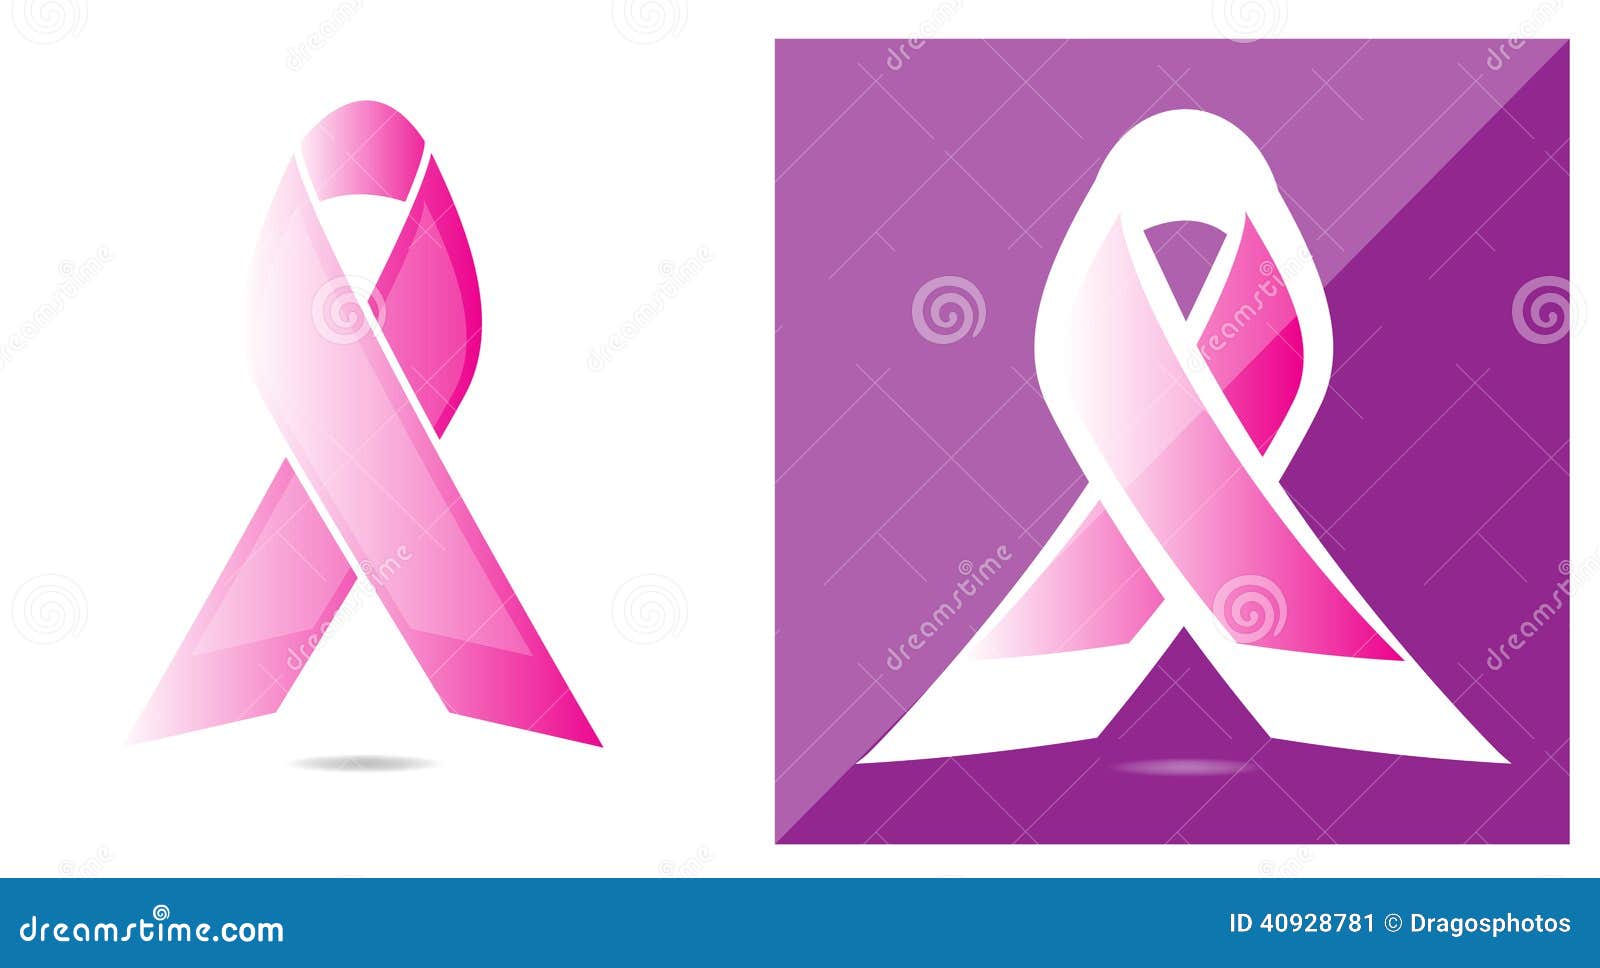 Types Breast Breast Shapes: стоковая векторная графика (без лицензионных  платежей), 2189658841